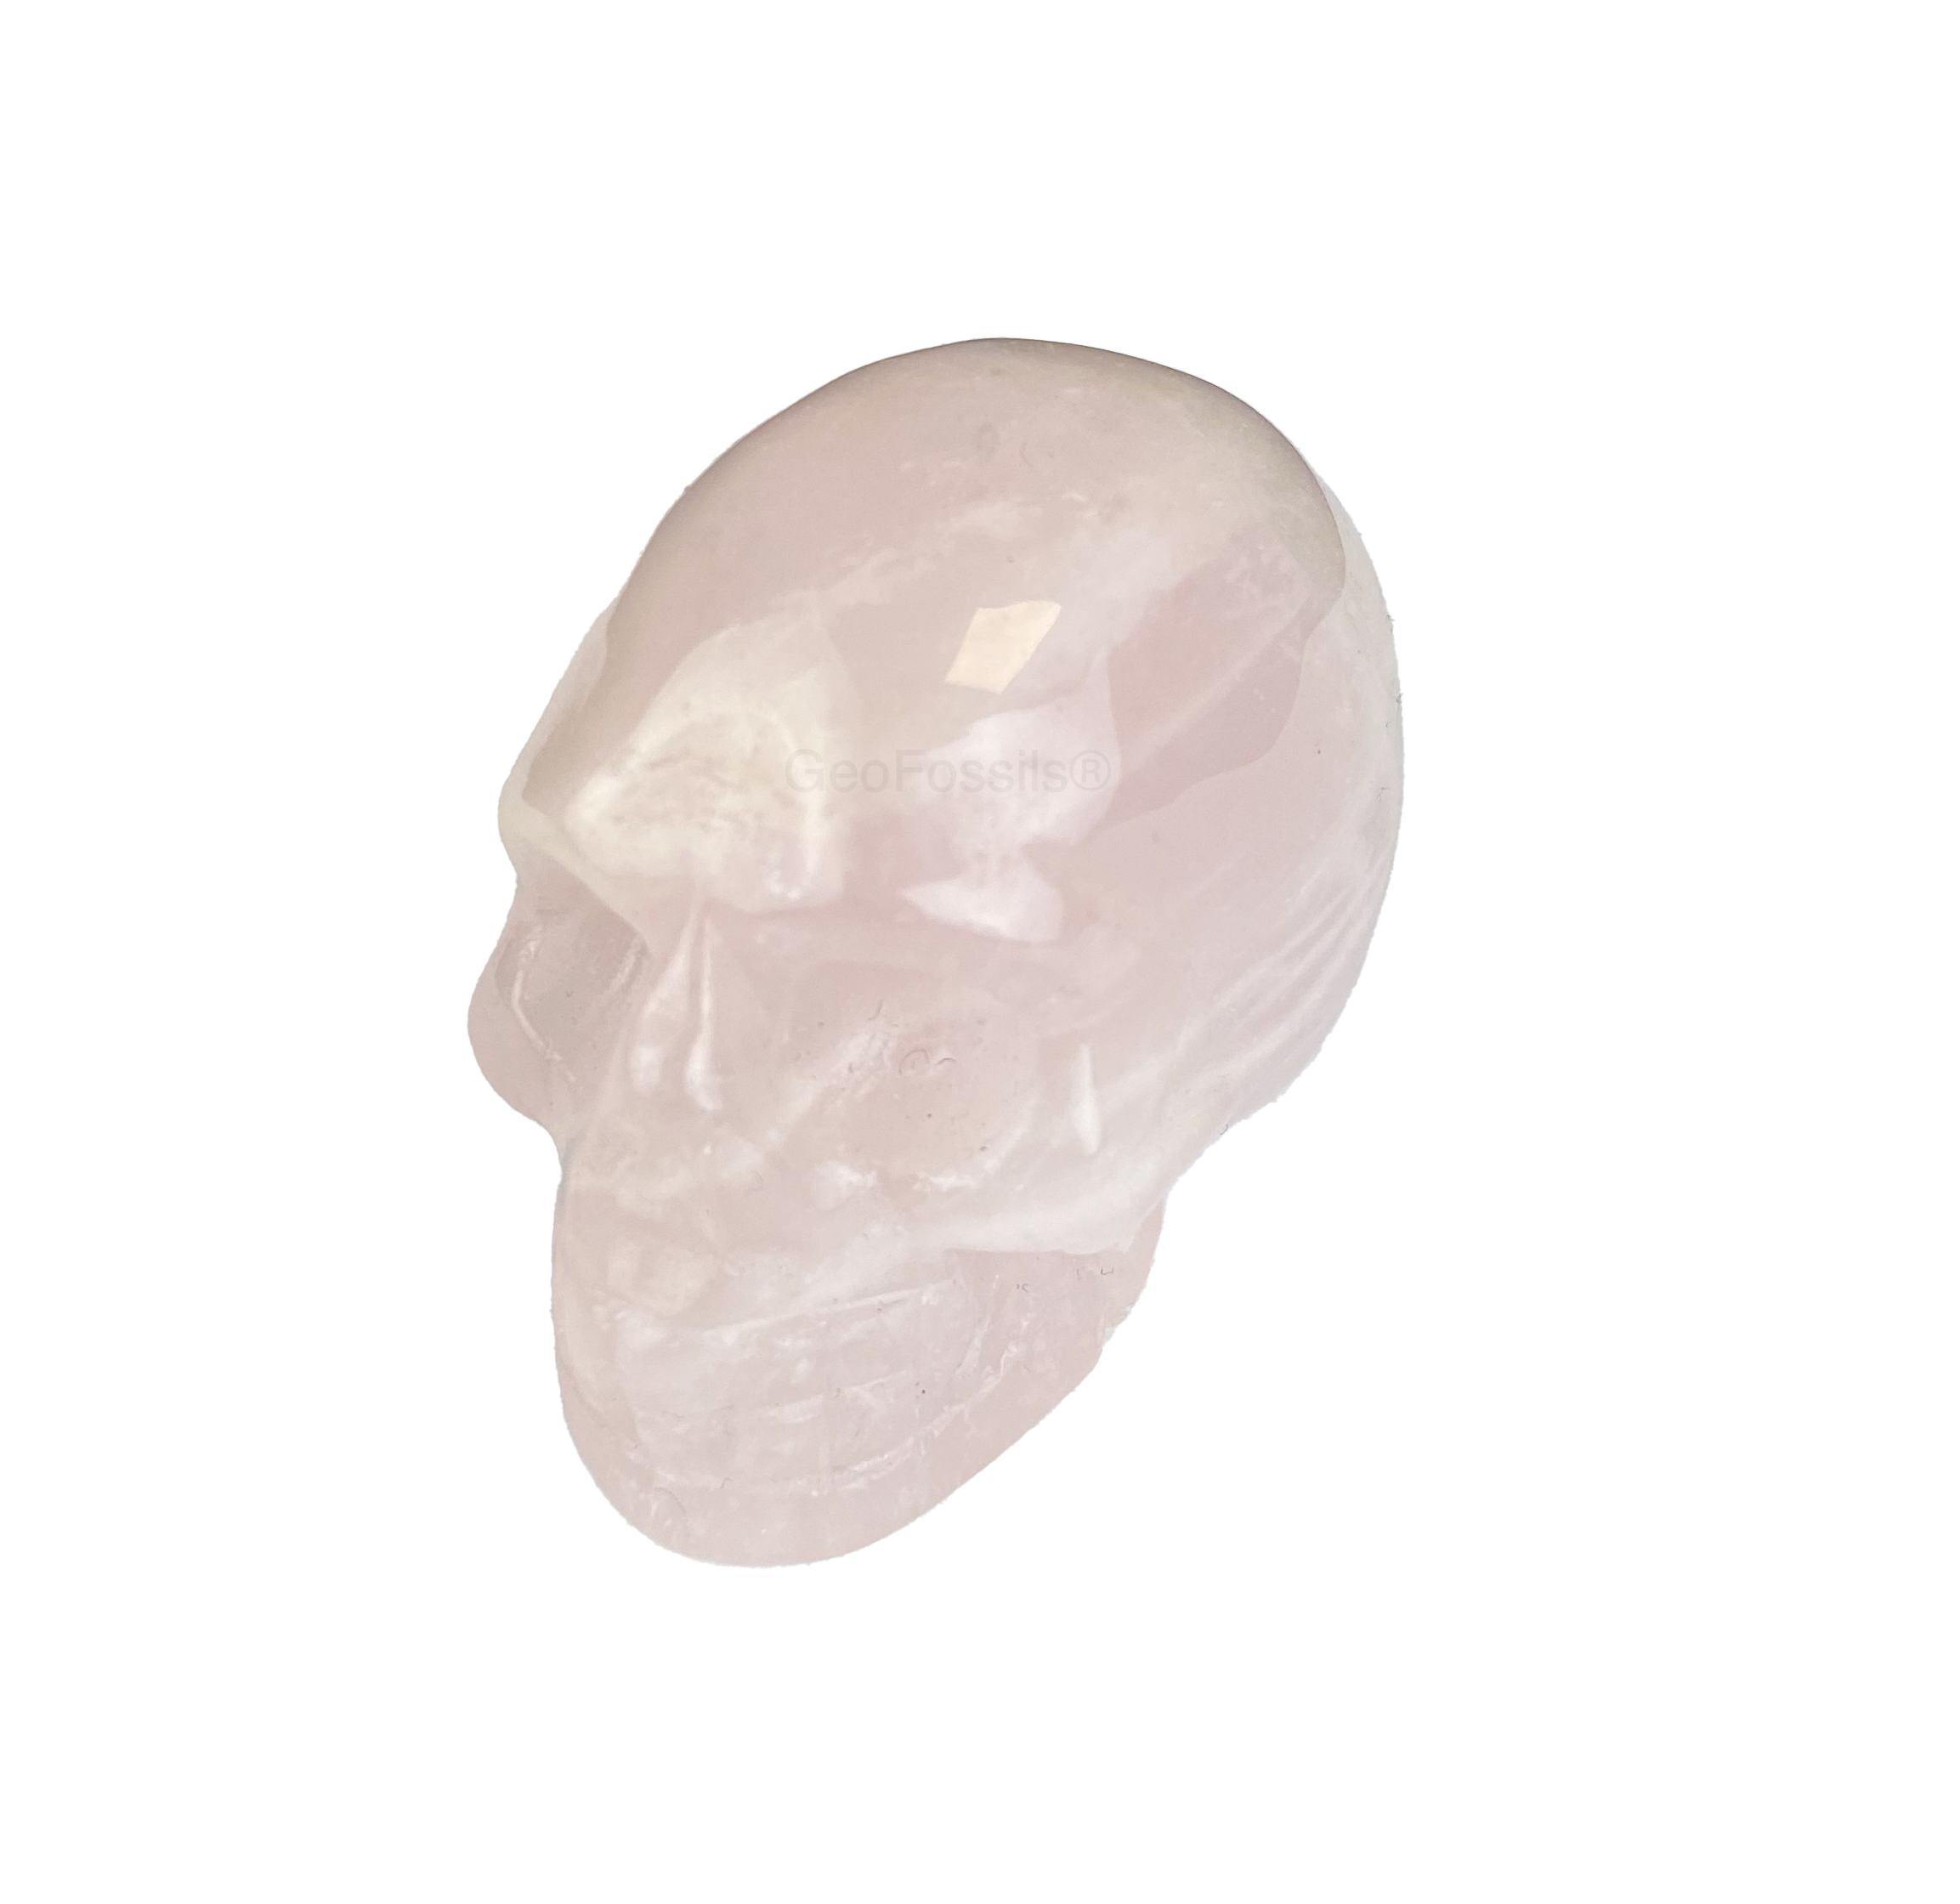 Geofossils Rose Quartz Skull Healing Crystal